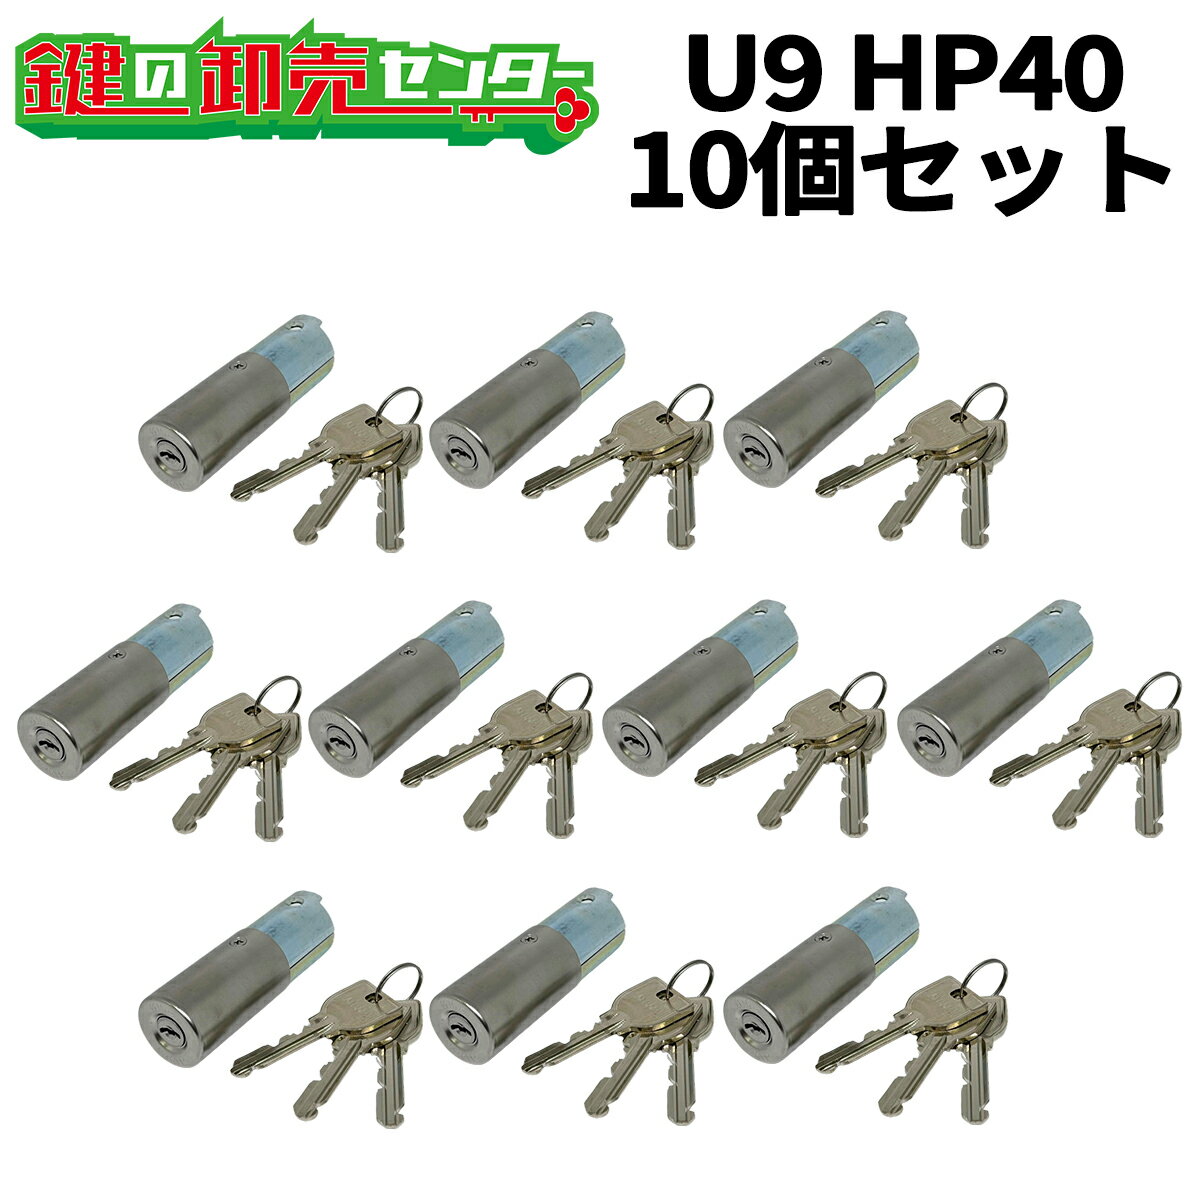 【10個セット】MIWA 美和ロック U9HP40（HPD40KJ） ST(シルバー)色 U9HP40用取替シリンダー MCY-116 鍵(カギ) 交換 取替